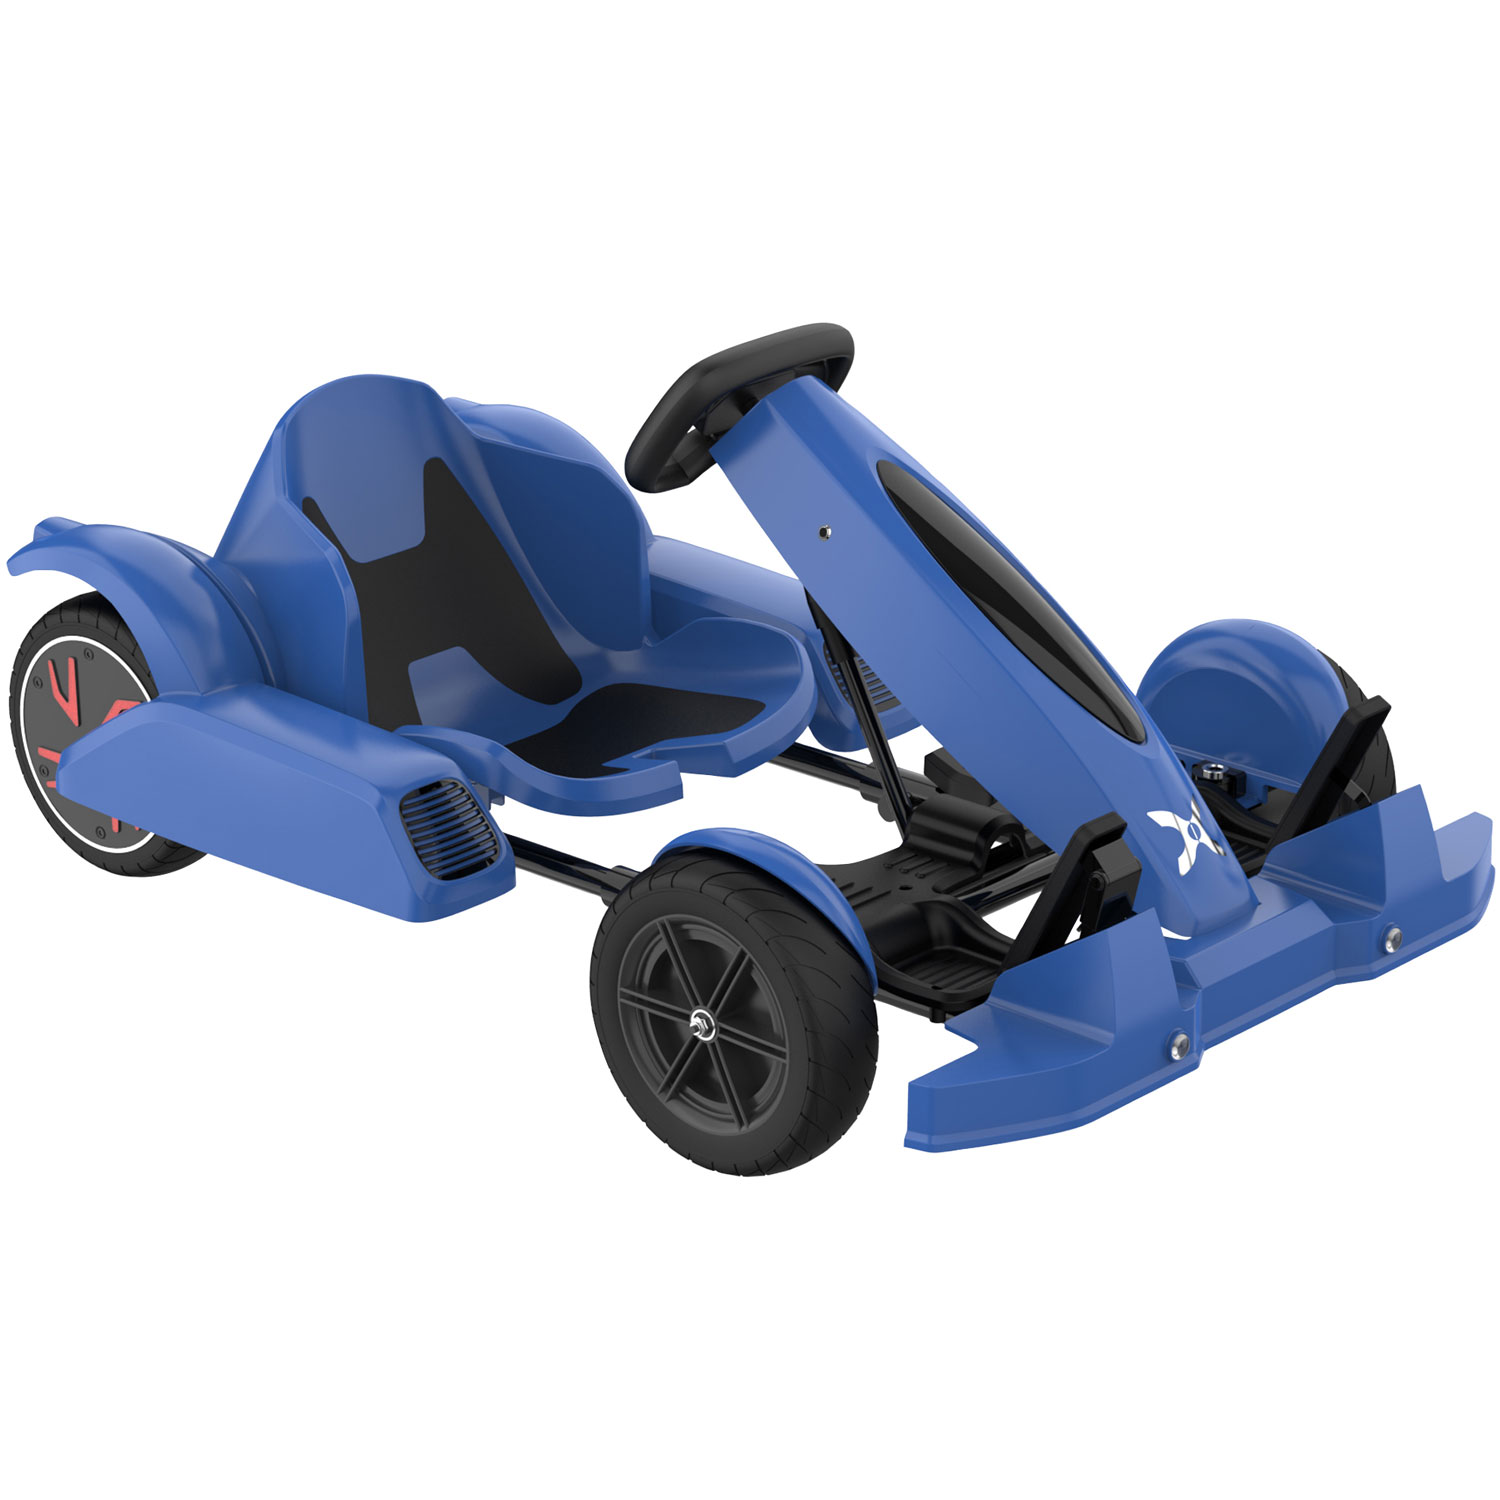 Hover-1 FM95 Electric Go-Kart - Blue